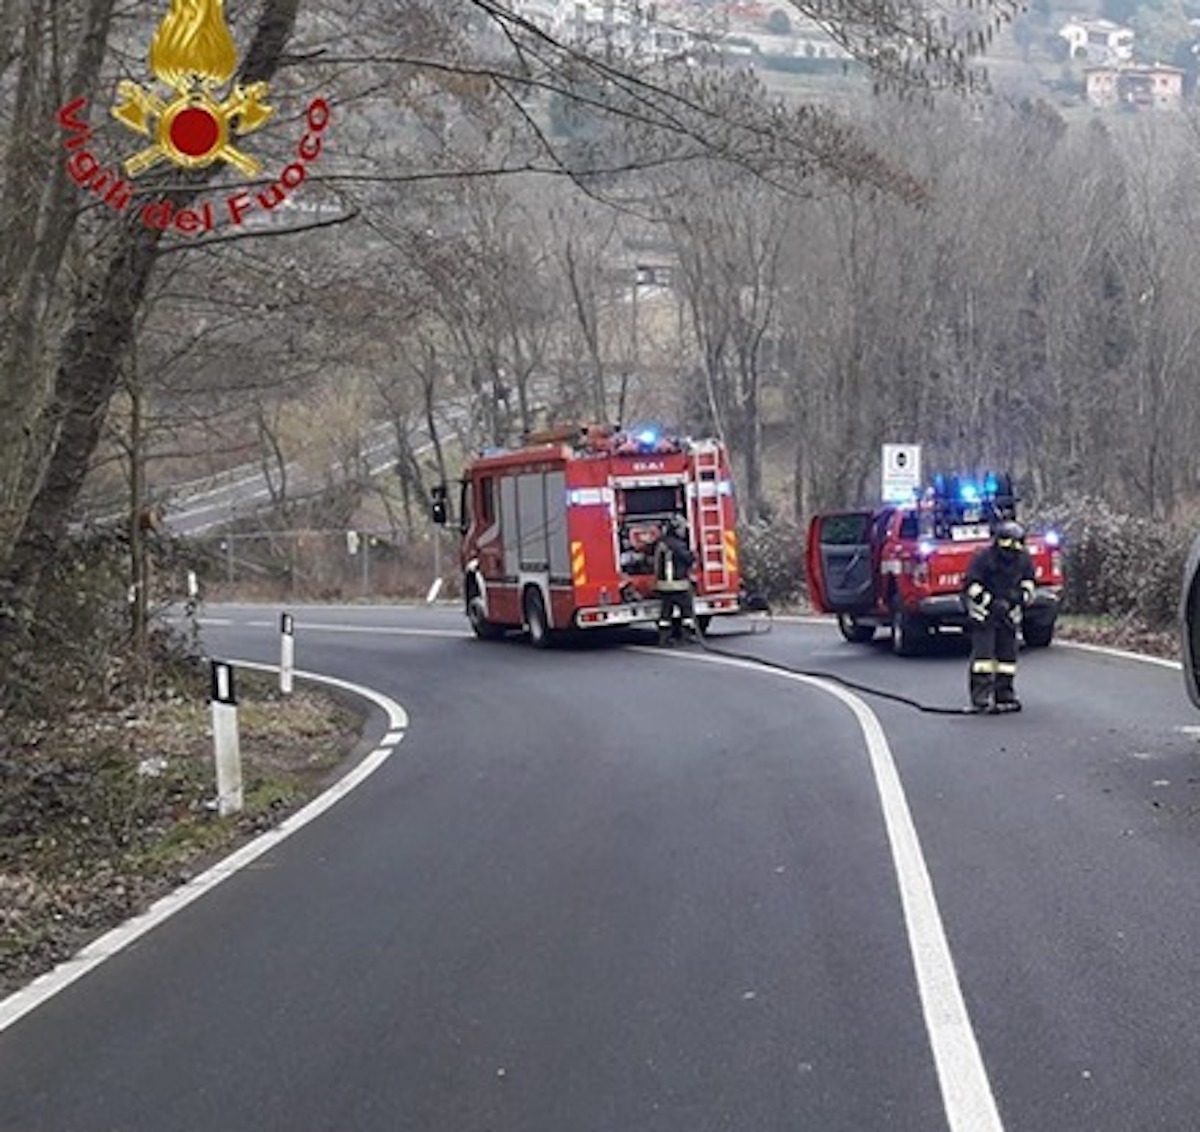 Albero crolla e schiaccia auto, morto il medico Francesco Vincenzo Maniaci